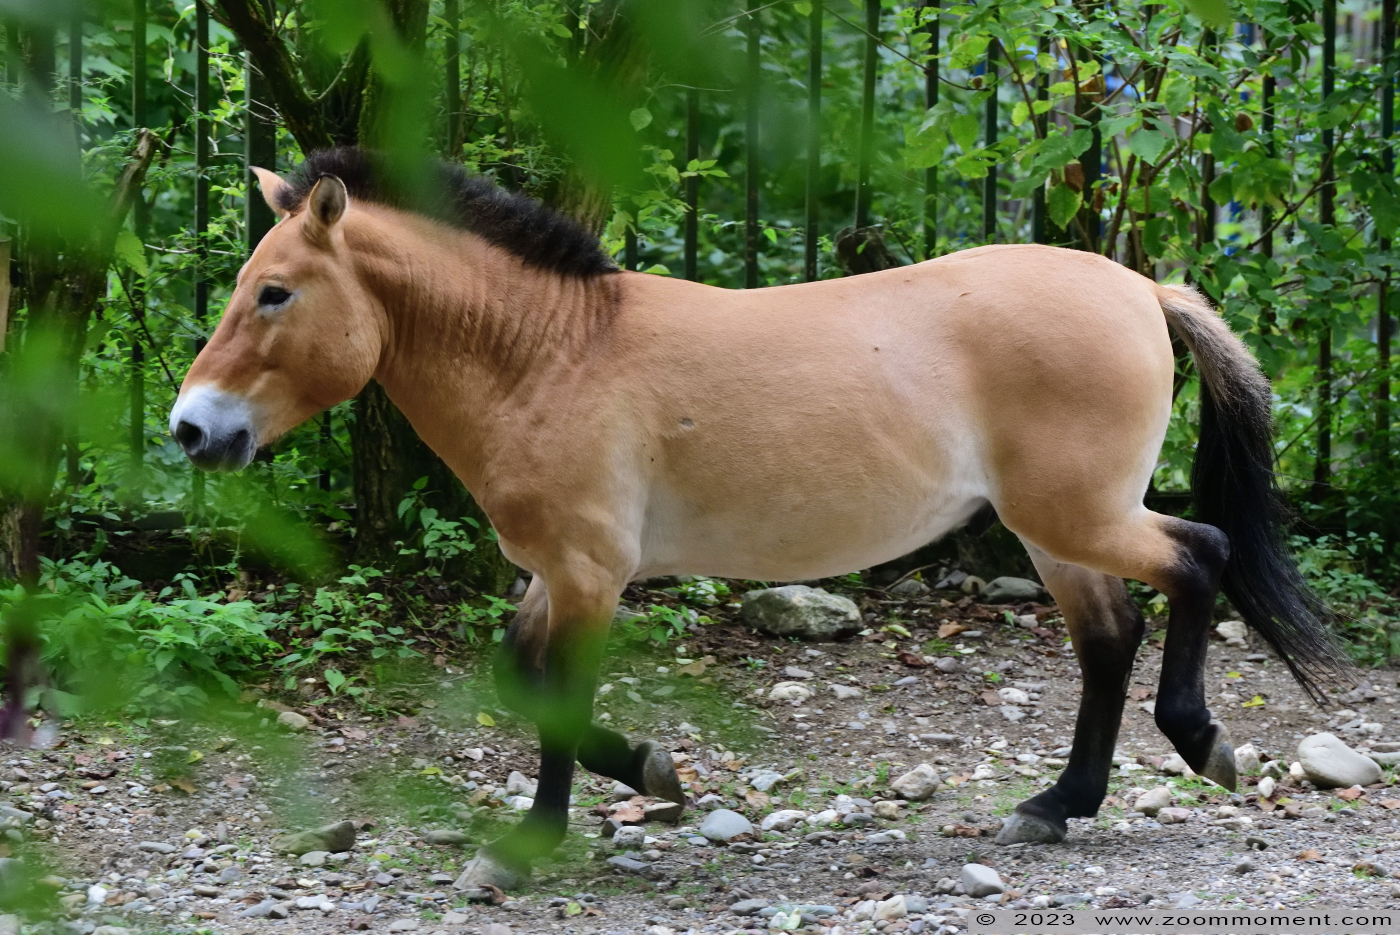 przewalskipaard ( Equus ferus przewalski ) Przewalski's horse Przewalskipferd
Trefwoorden: Neuwied Germany przewalskipaard Equus ferus przewalski Przewalski&#039;s horse Przewalskipferd